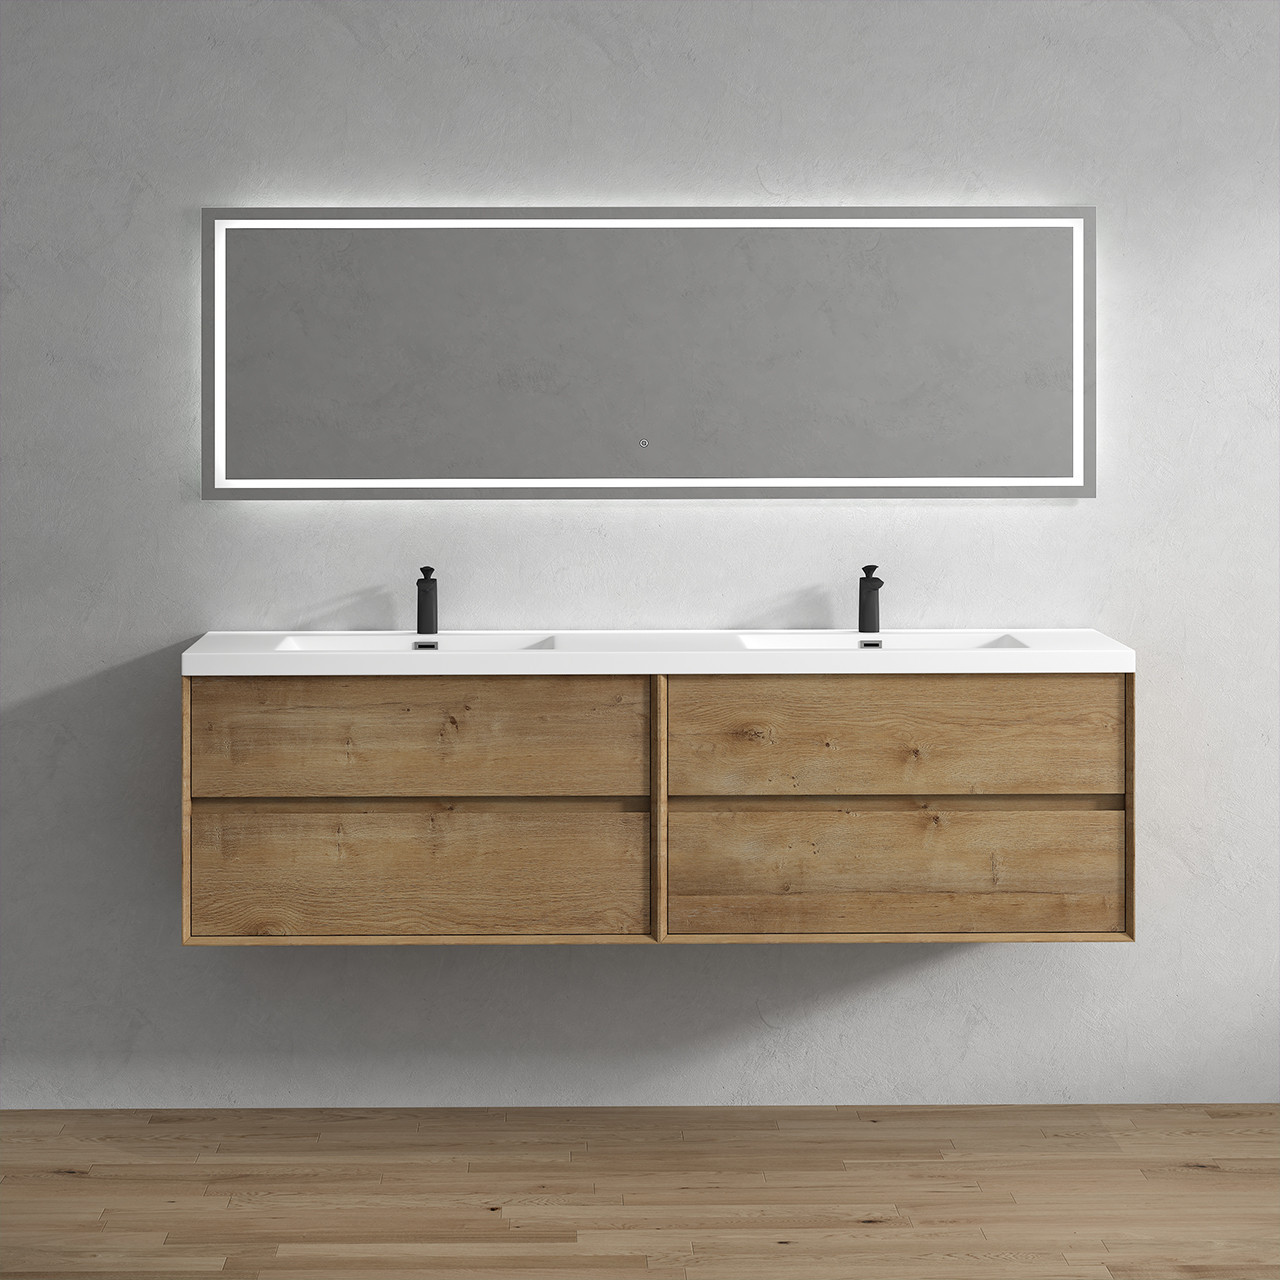 Kingdee 84" Floating Double Vanity in White Oak | Moreno Bath Floating Oak Bathroom Vanities